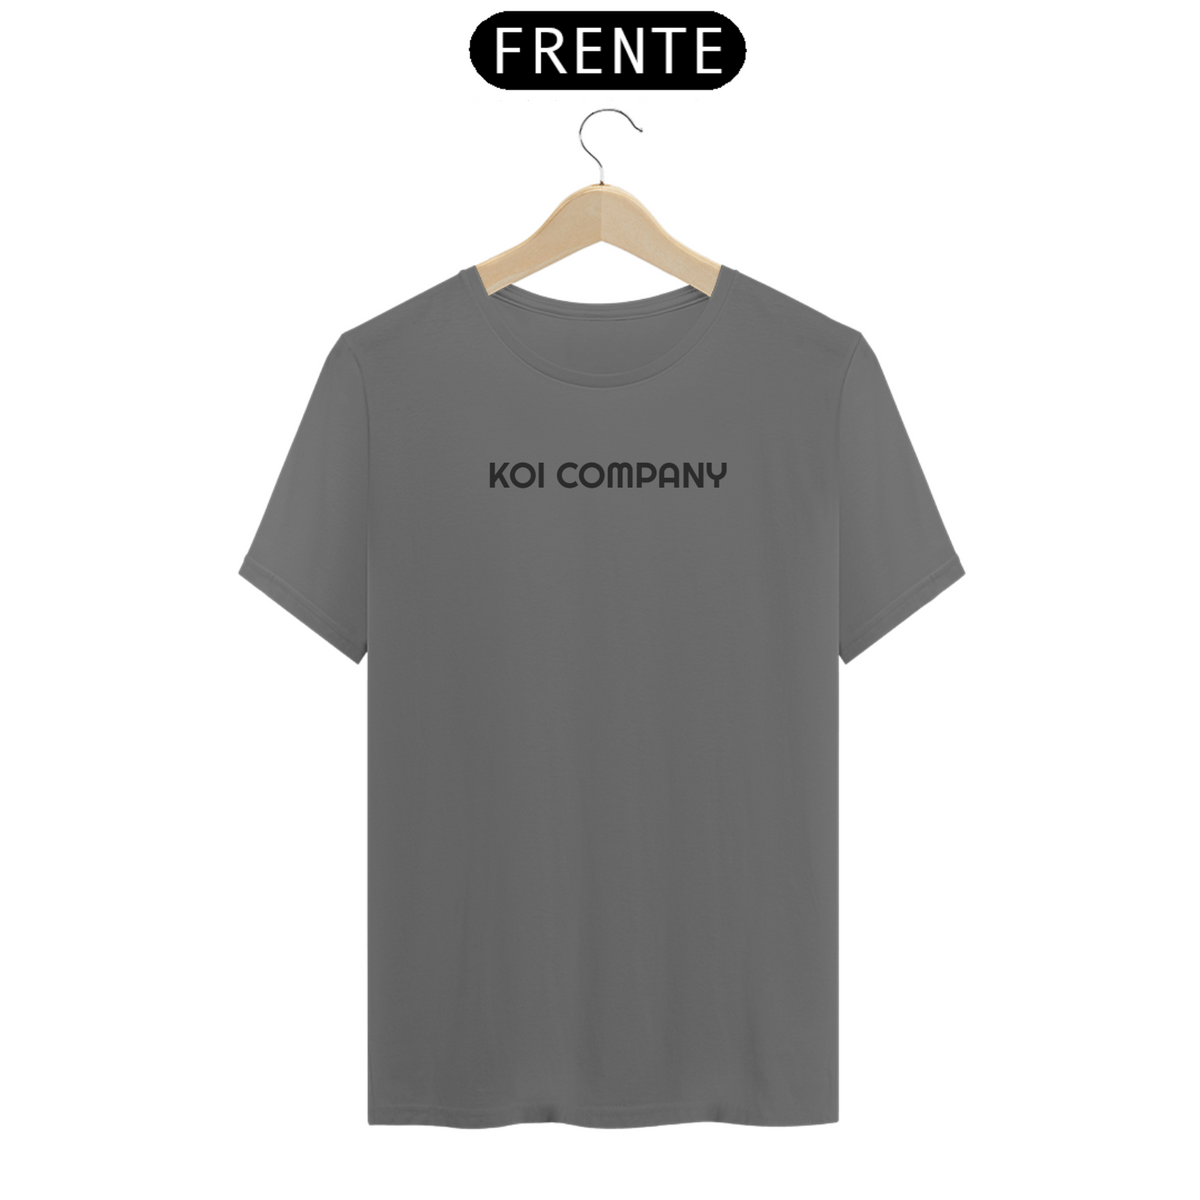 Nome do produto: Camiseta Premium KOI COMPANY Estonada